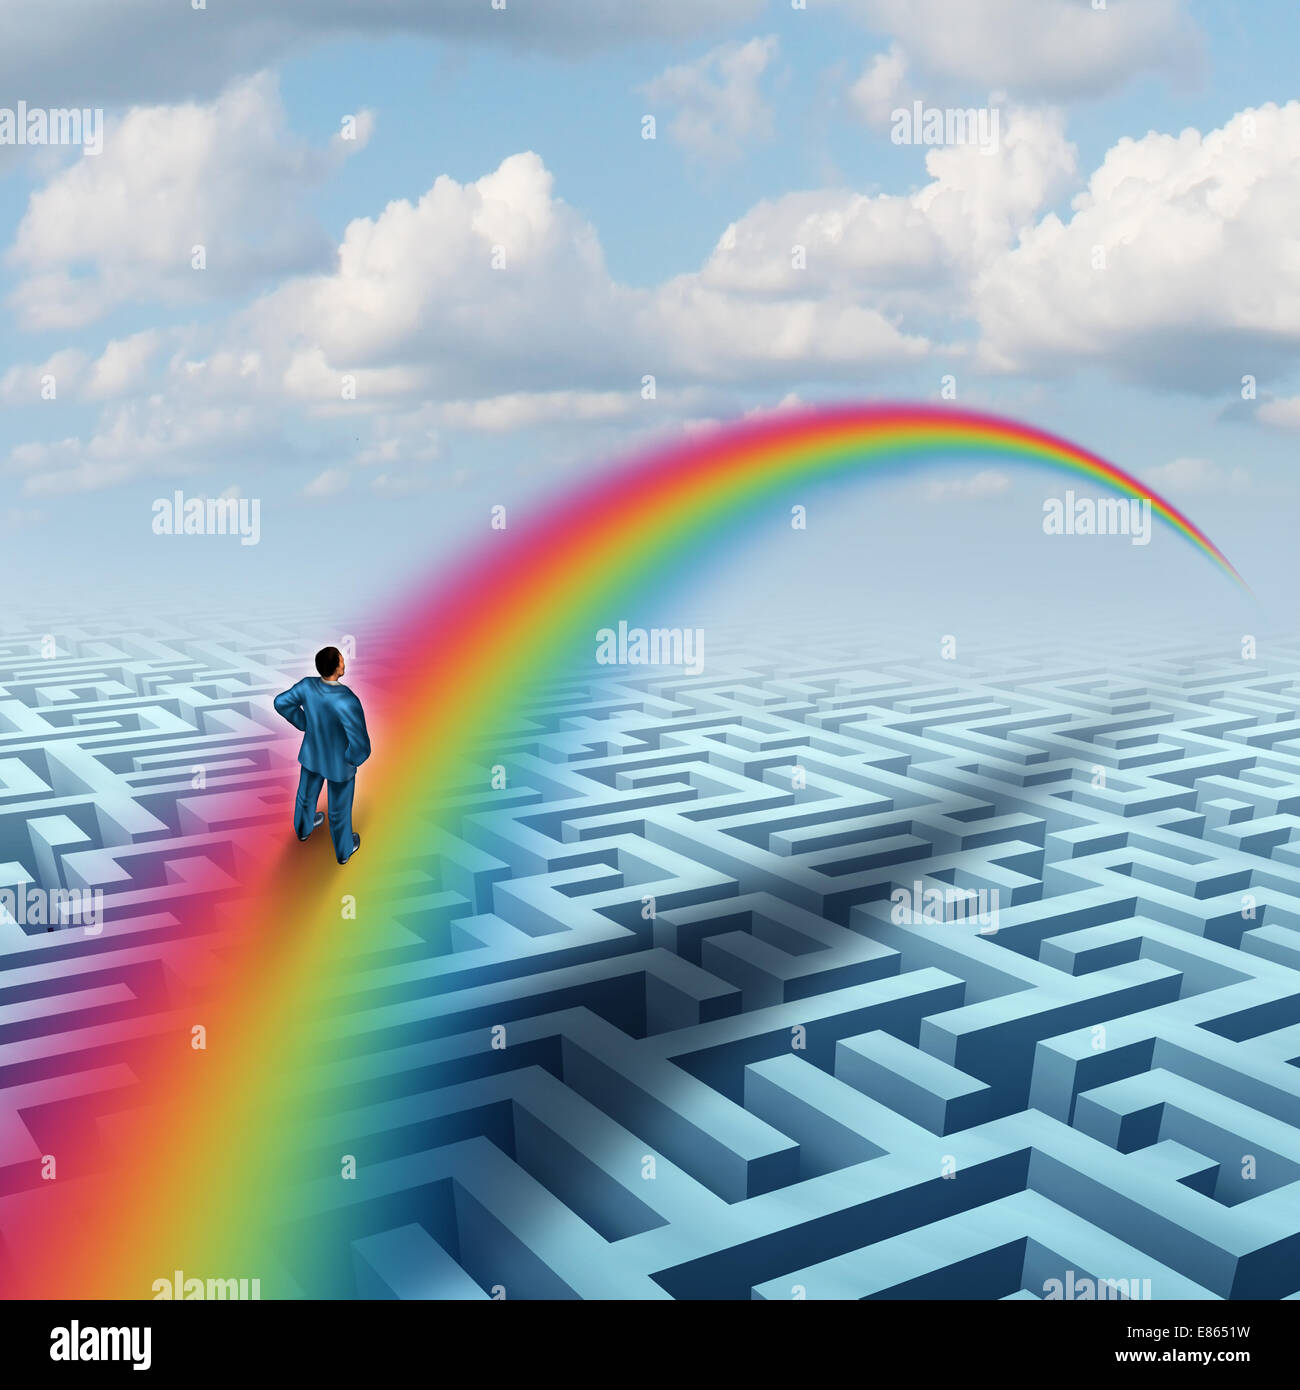 Excel-Konzept als eine kreative Lösung für eine Herausforderung als Geschäftsmann Kreuzung ein kompliziertes Labyrinth oder Labyrinth mit einer Brücke aus einem Regenbogen als Erfolg Metapher für eine zukünftige Vollendung oder virtuelle Realität zu visualisieren. Stockfoto